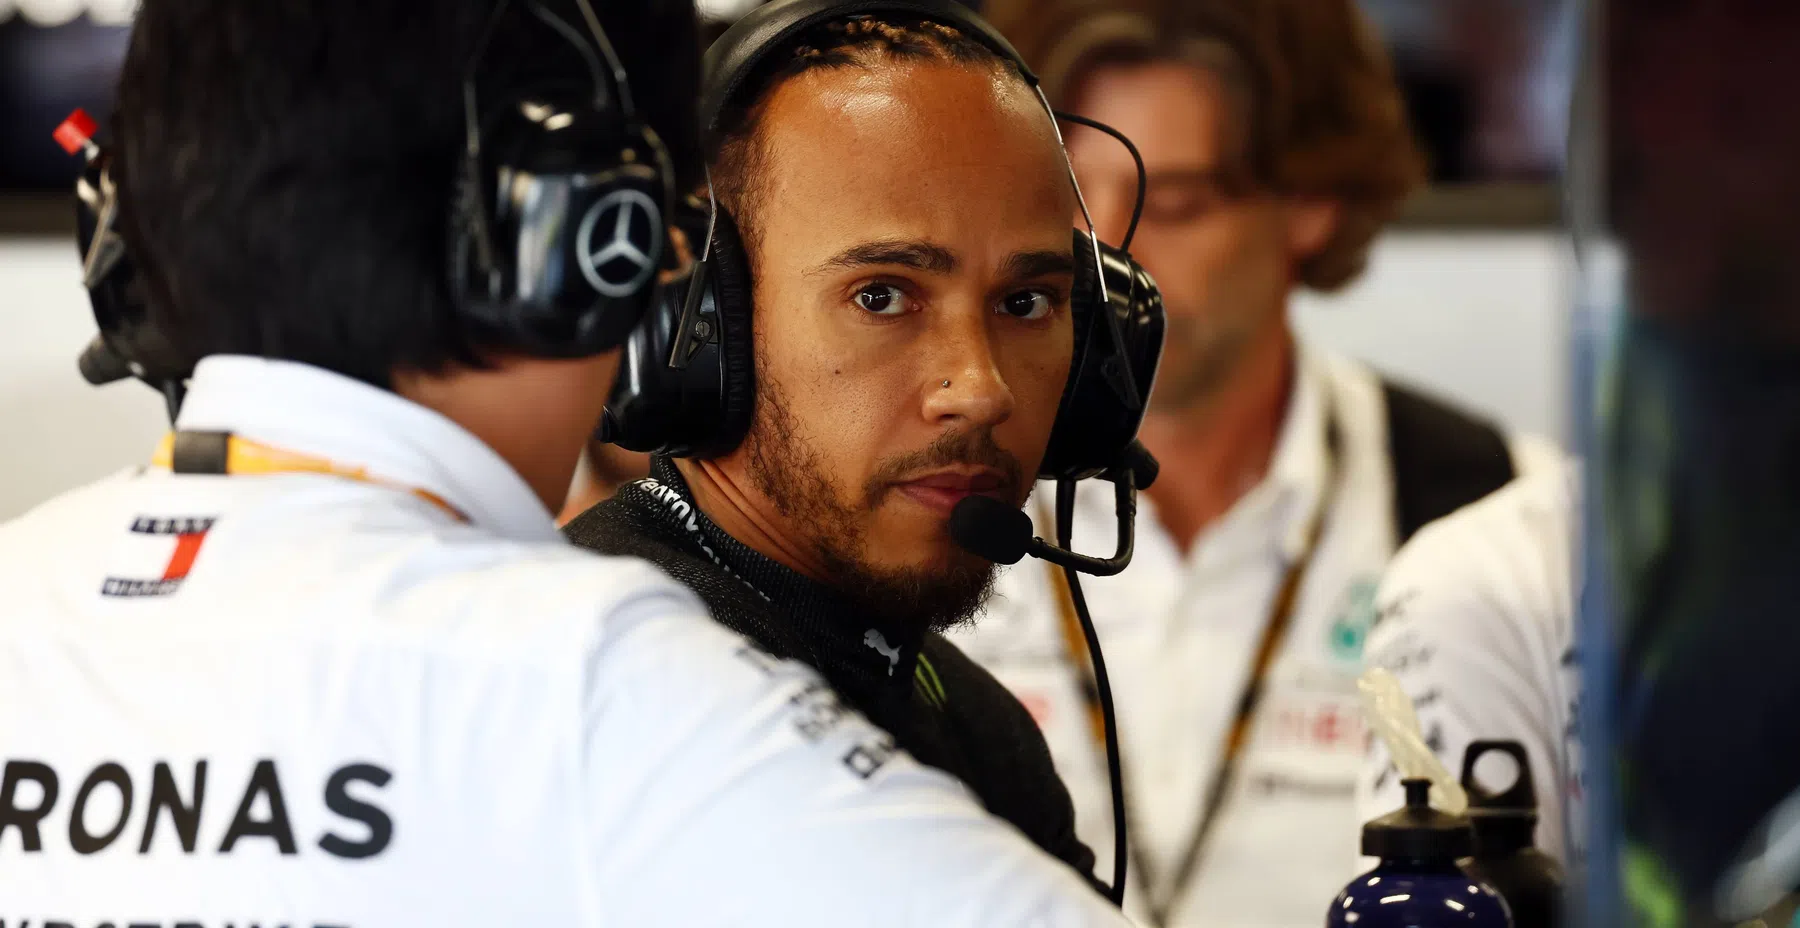 Hamilton reconnaissant malgré une année difficile en F1